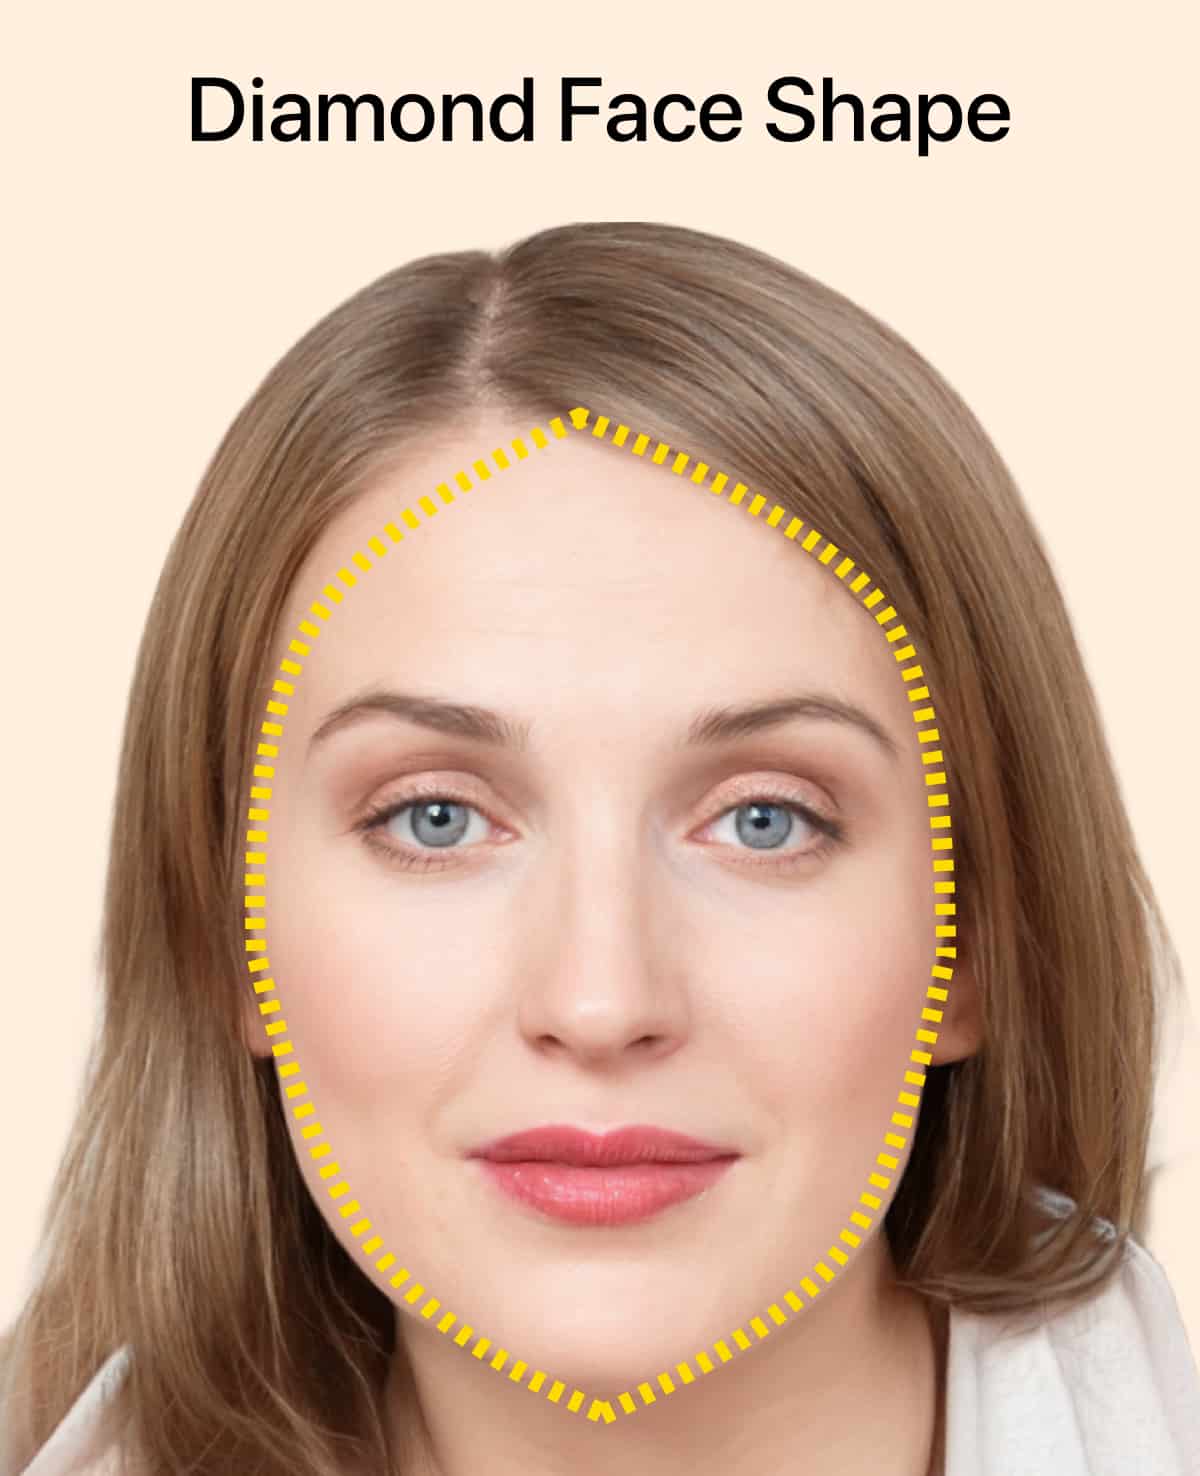 Diamond face shape for women